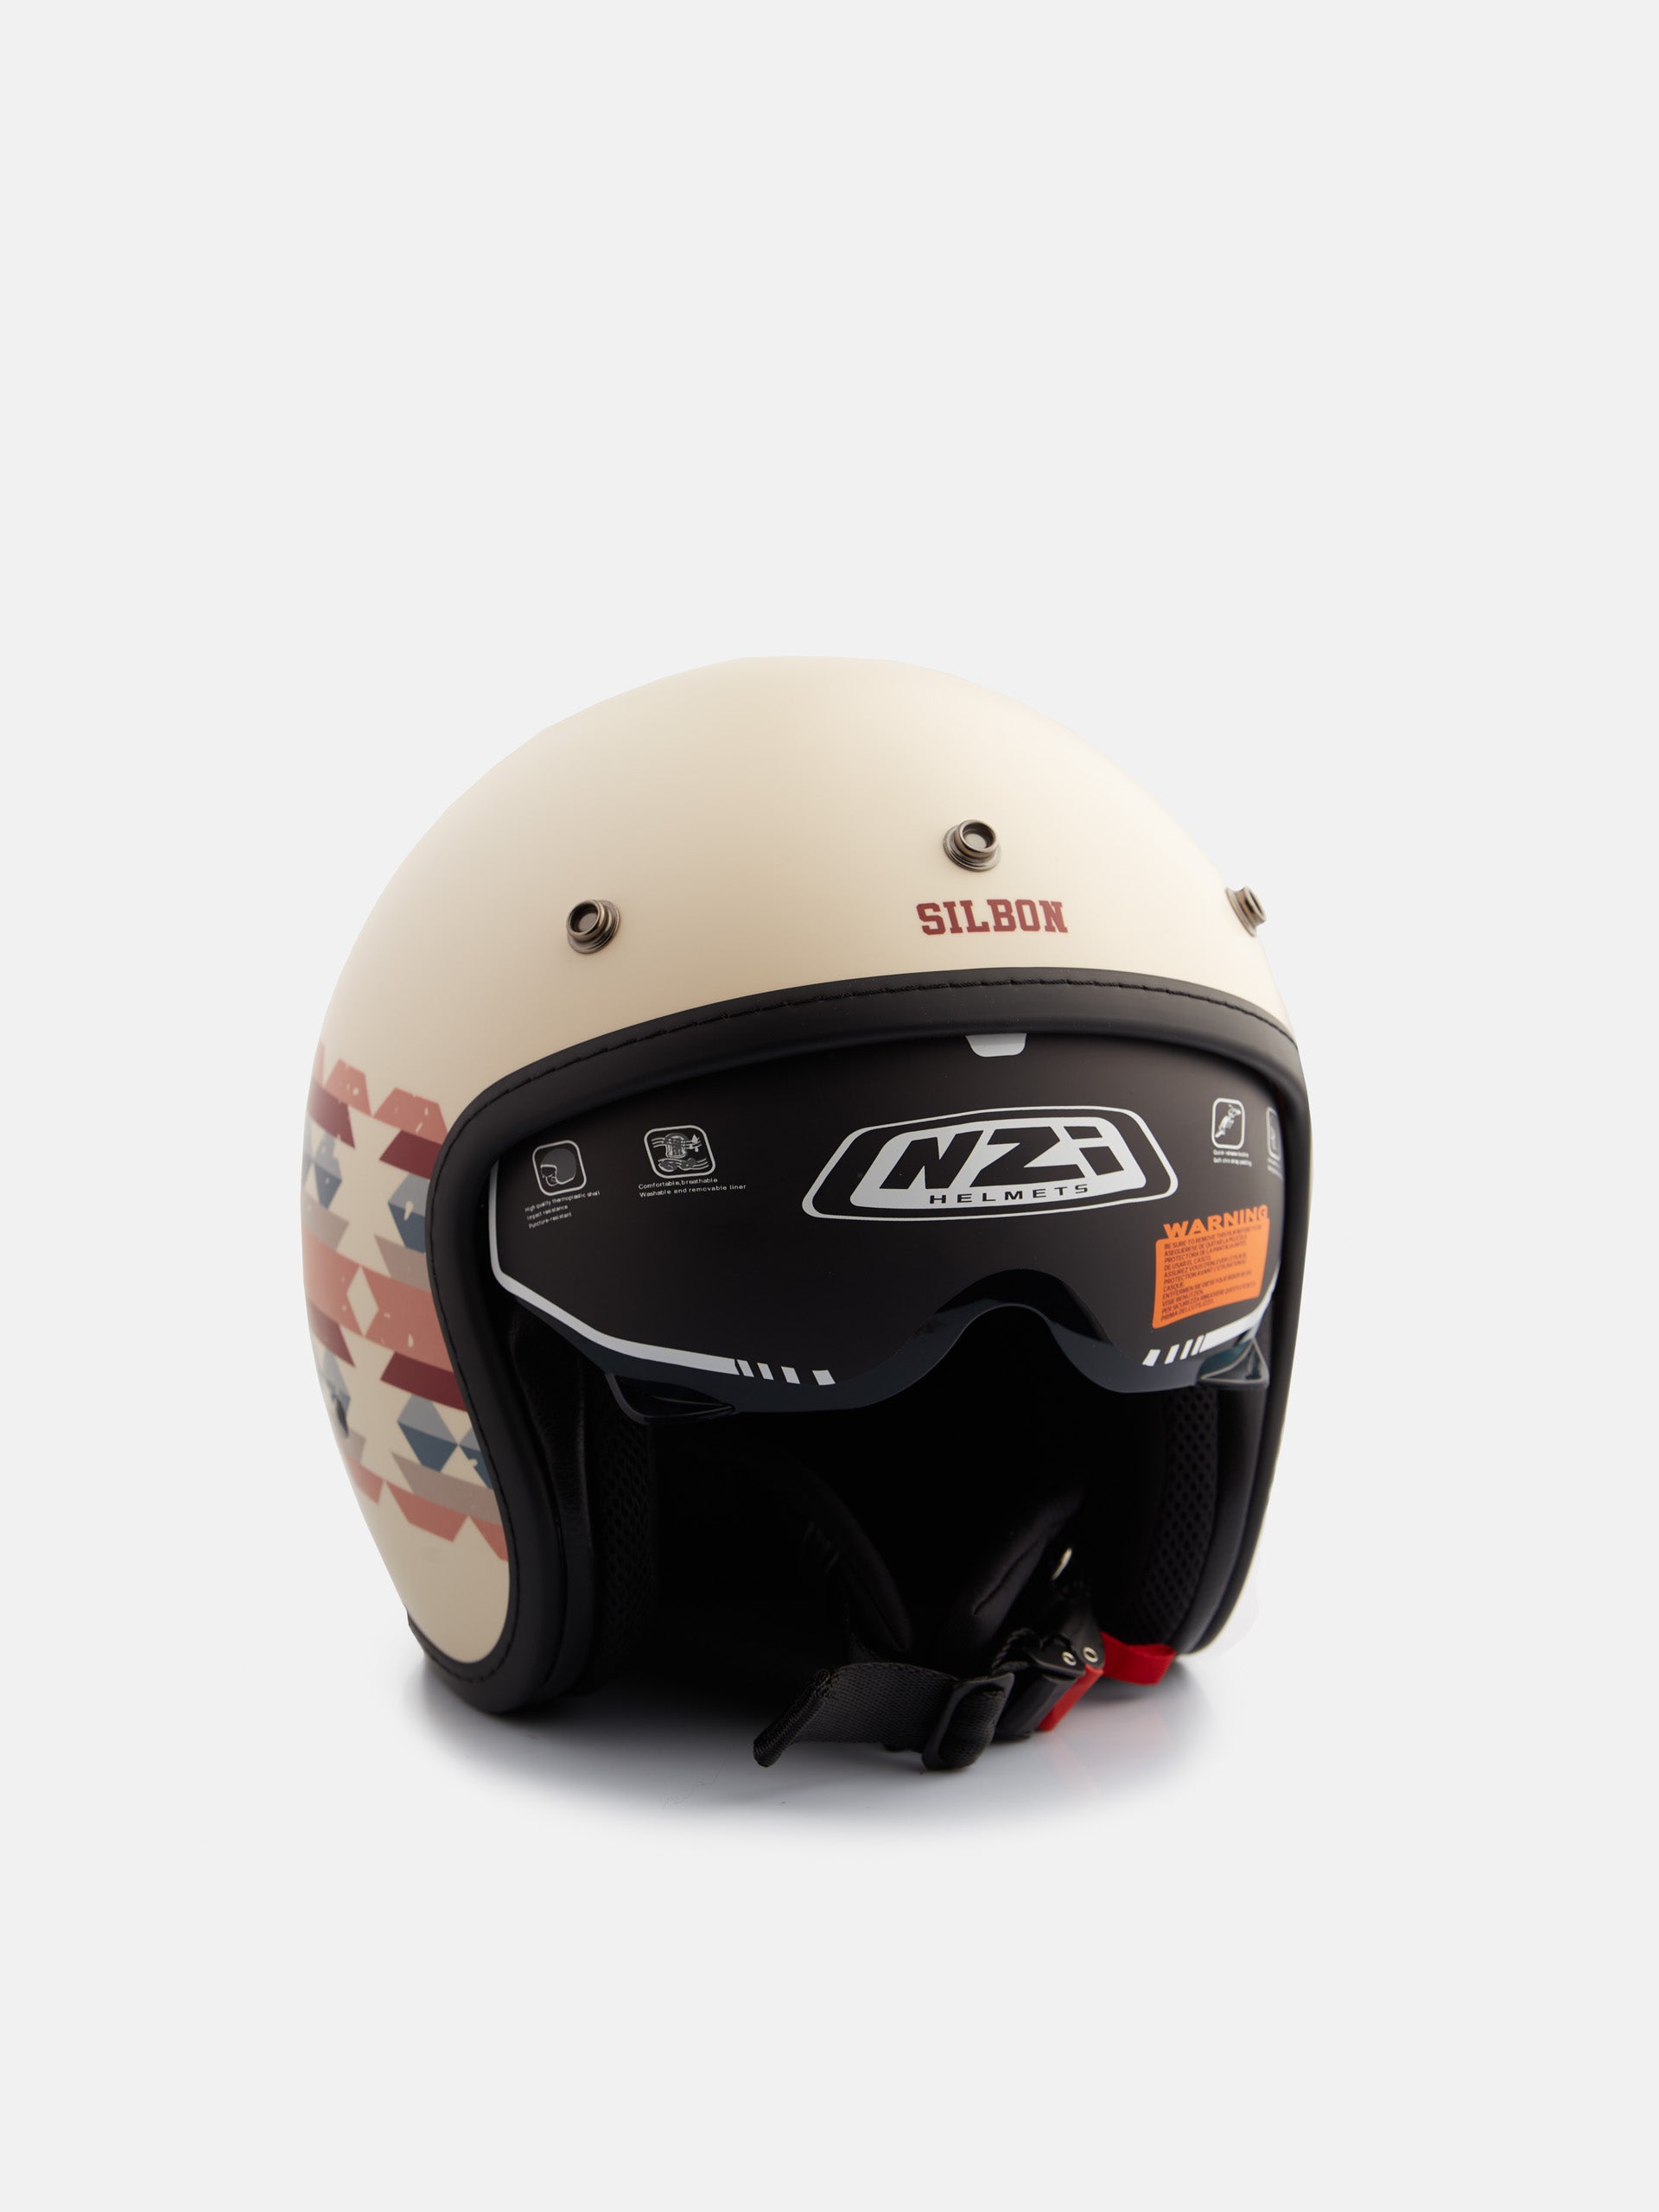 Cream ethnic motorcycle helmet